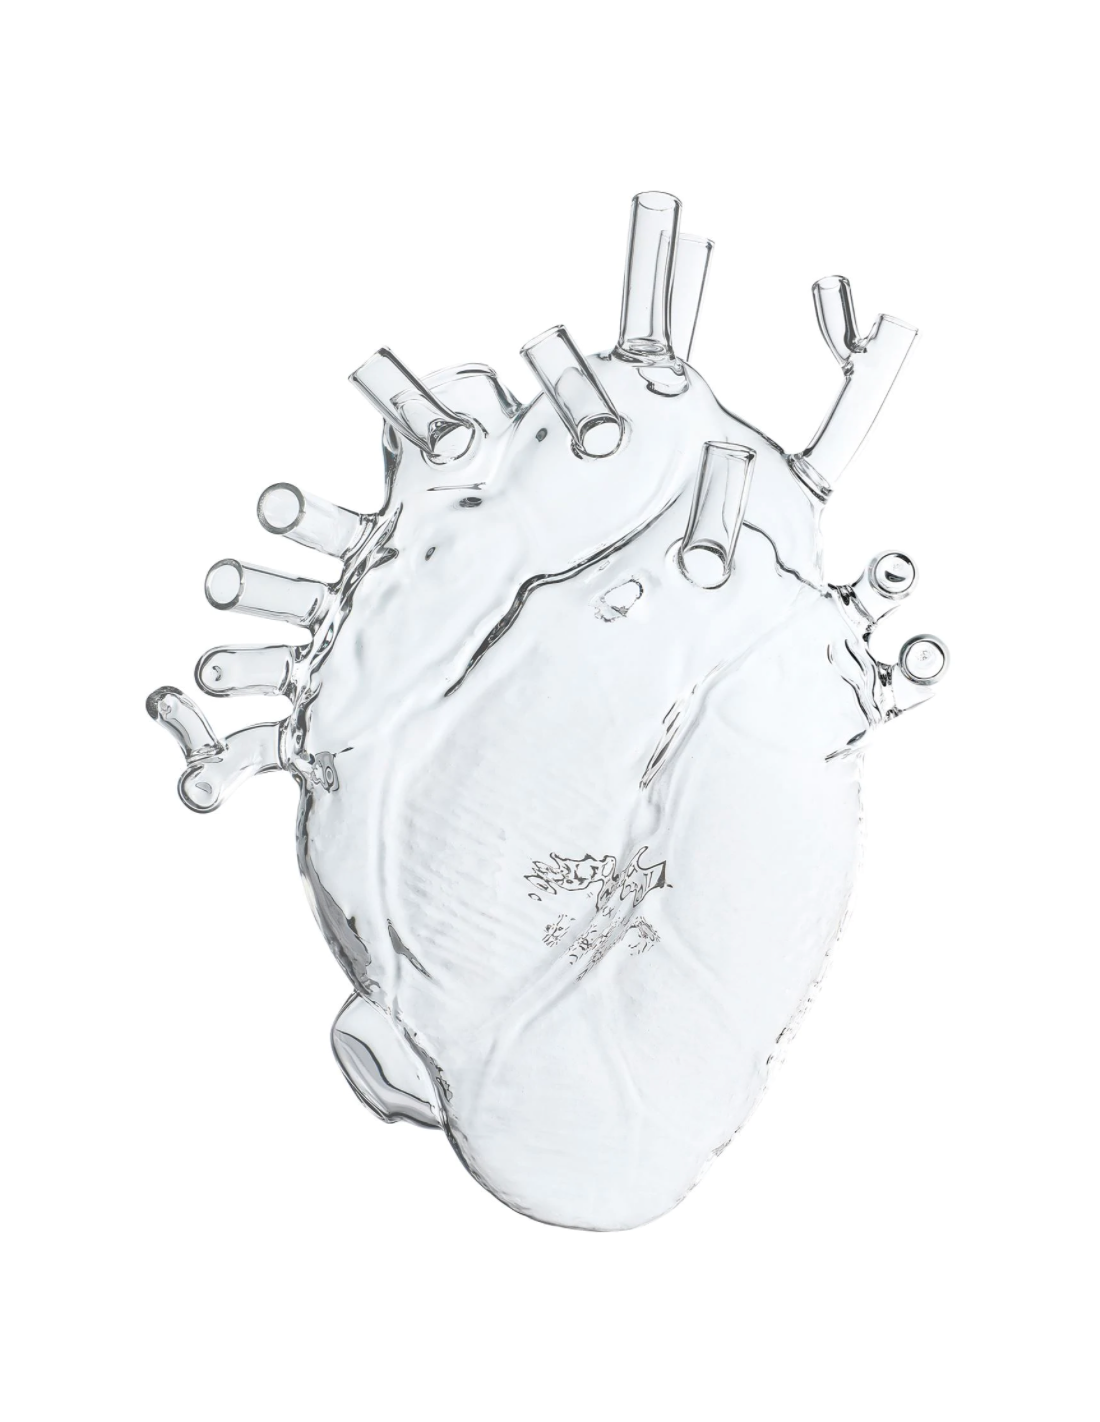 Décoration en forme de cœur très détaillée et complexe en cristal au plomb,  réaliste et anatomiquement